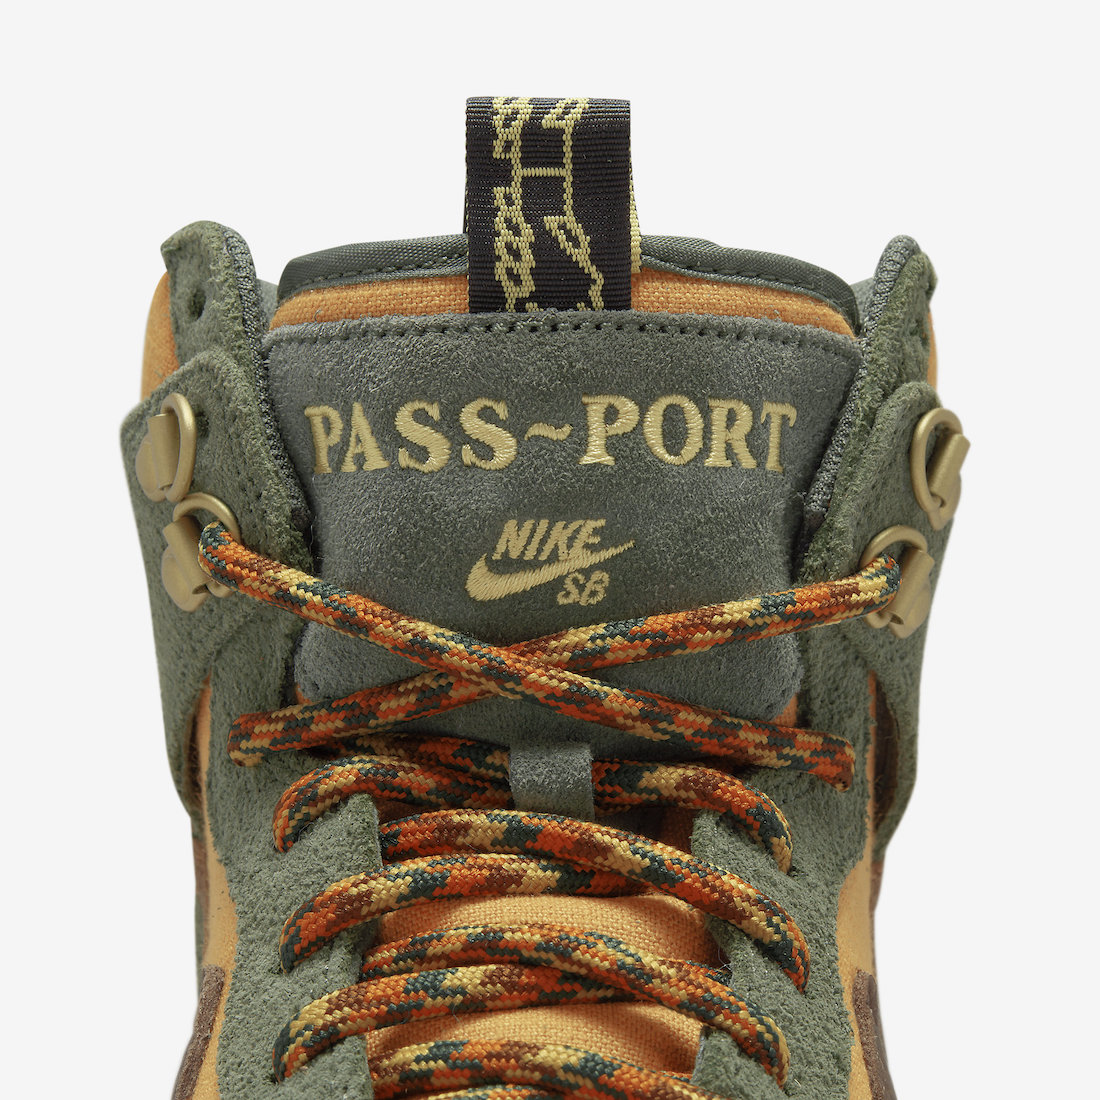 Pass-Port Nike SB Dunk High DO6119-300 Release Date